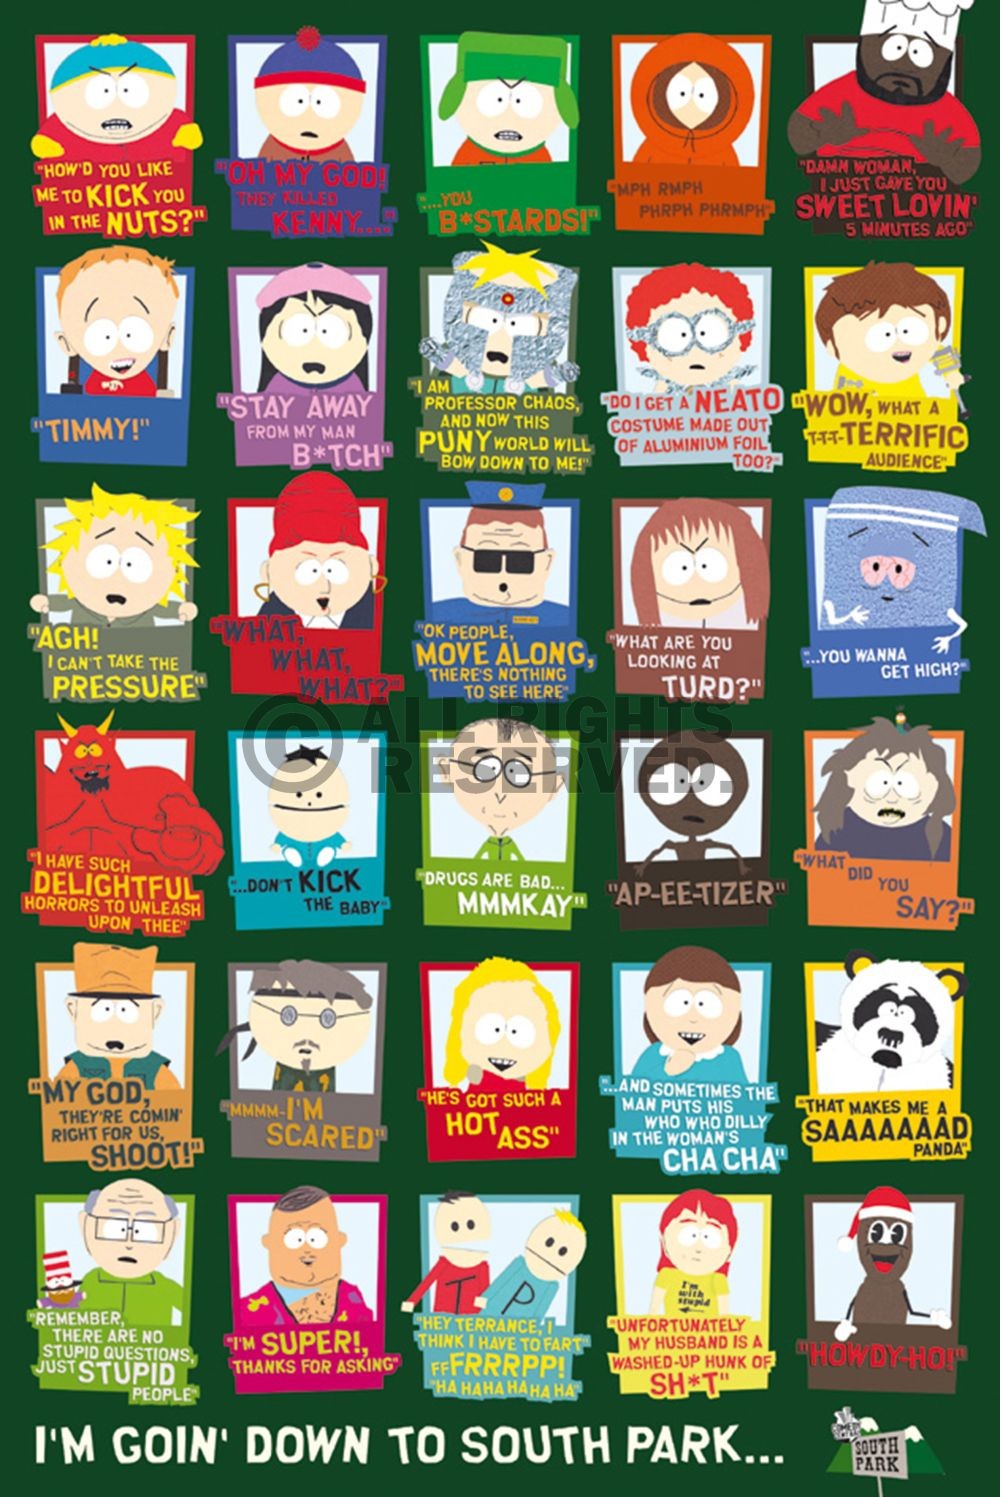 Unbekannt, South Park - quotes (Zeichentrick, Serie, Animation, Plakat, Gesellschaftskritik, Grafik, Wohnzimmer, Jugendzimmer, bunt)